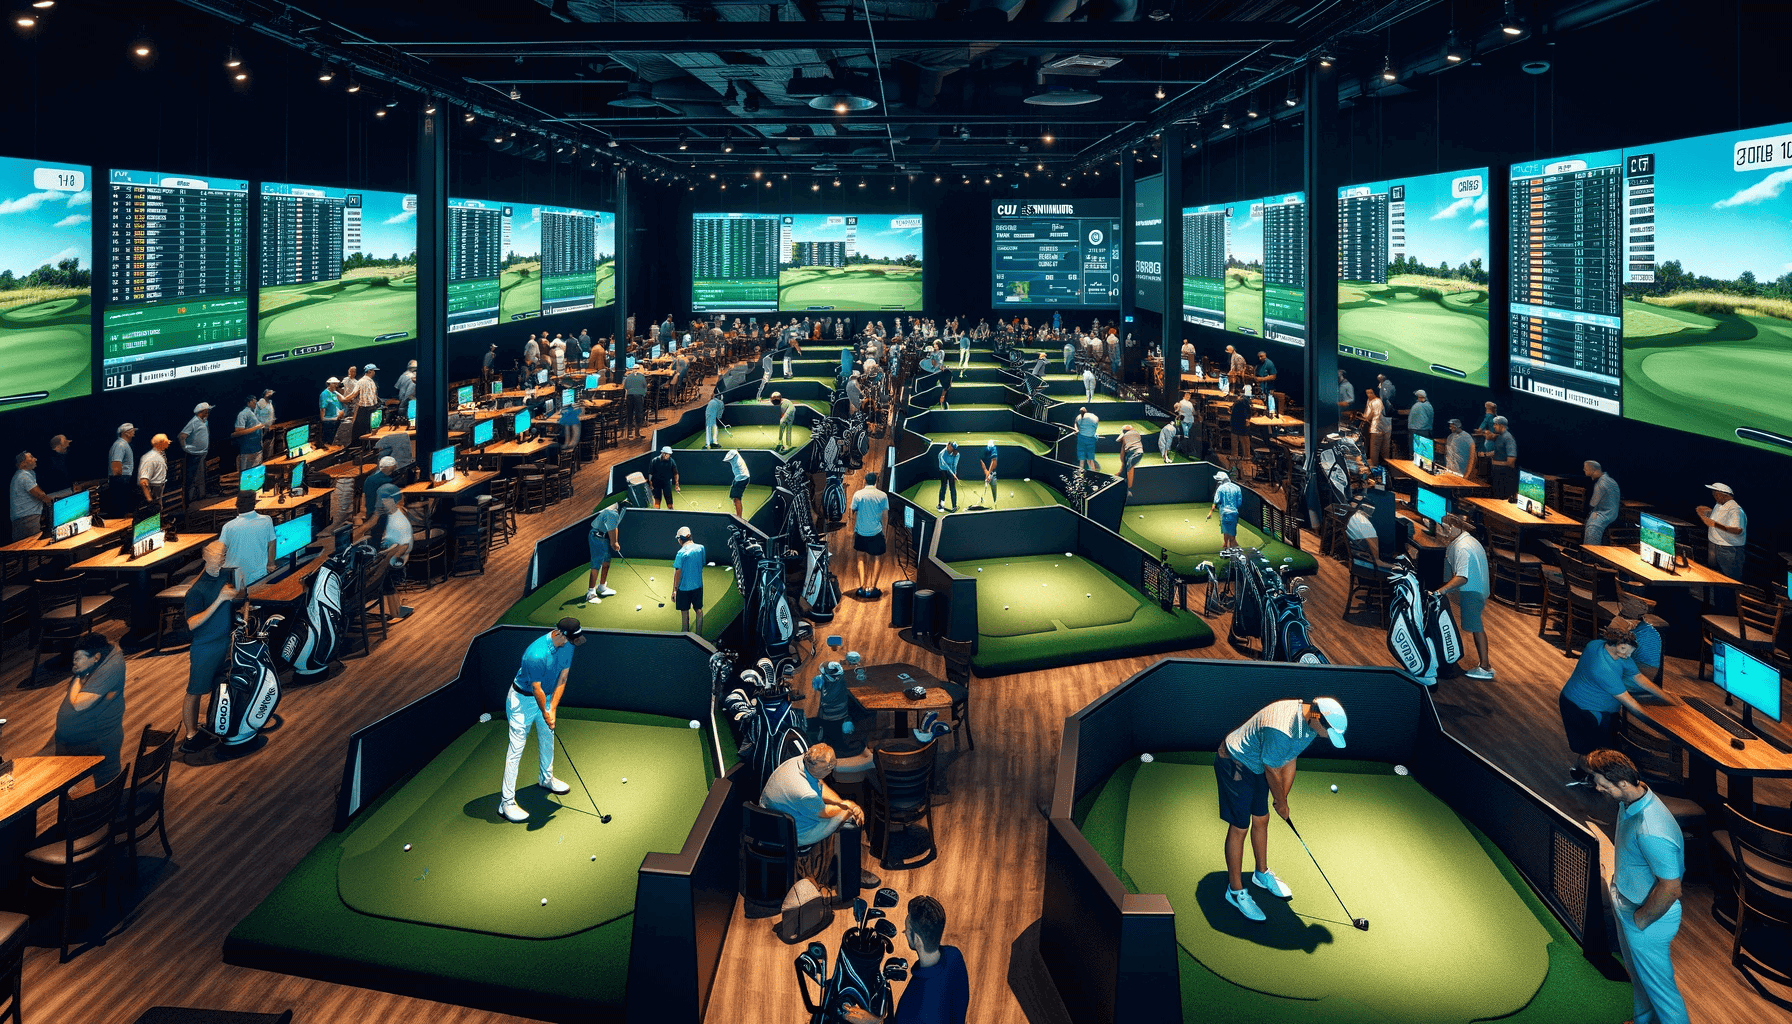 indoor golf business plan